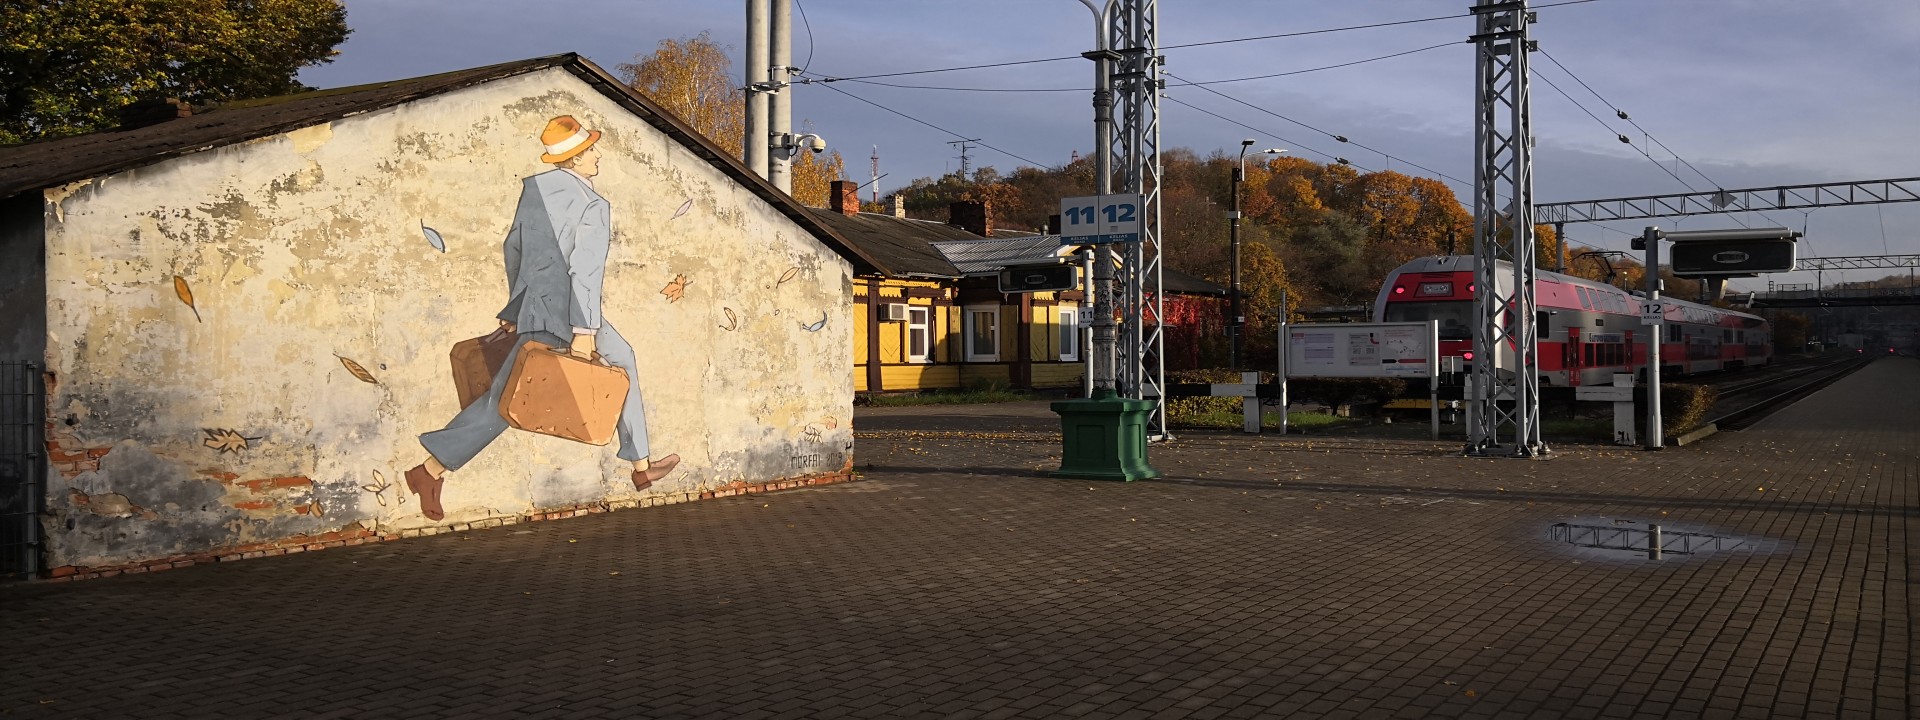 Kleiner Bahnhof im Herbst, links im Vordergrund ein Gebäude mit Gemälde - ein Mann im Anzung und Hut trägt zwei Koffer und läuft Richtung Gleis. Im Hintergrund steht ein roter Zug, daneben ein kleines gelbes Gebäude und Bäume. 